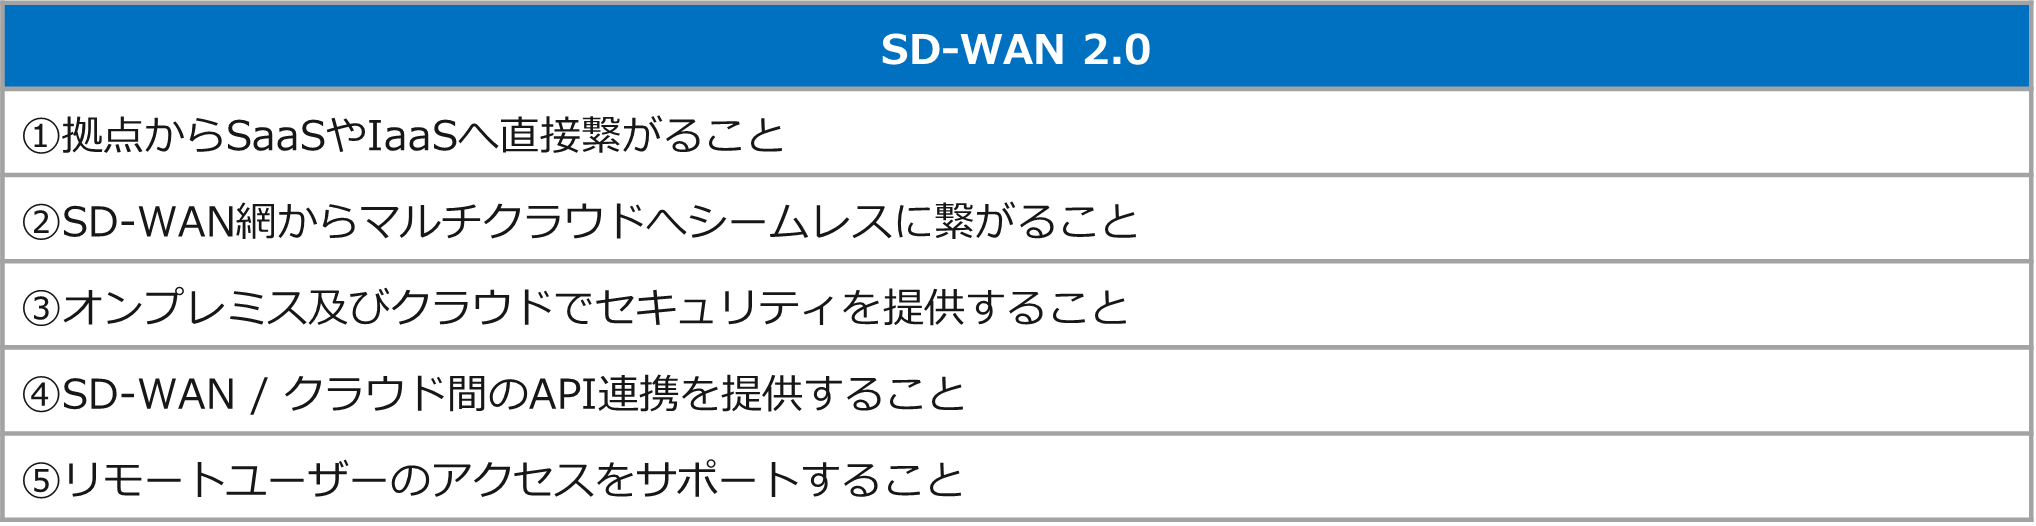 図解でわかるSD-WANとは？求められる背景とSD-WANのメリット_2.0.png